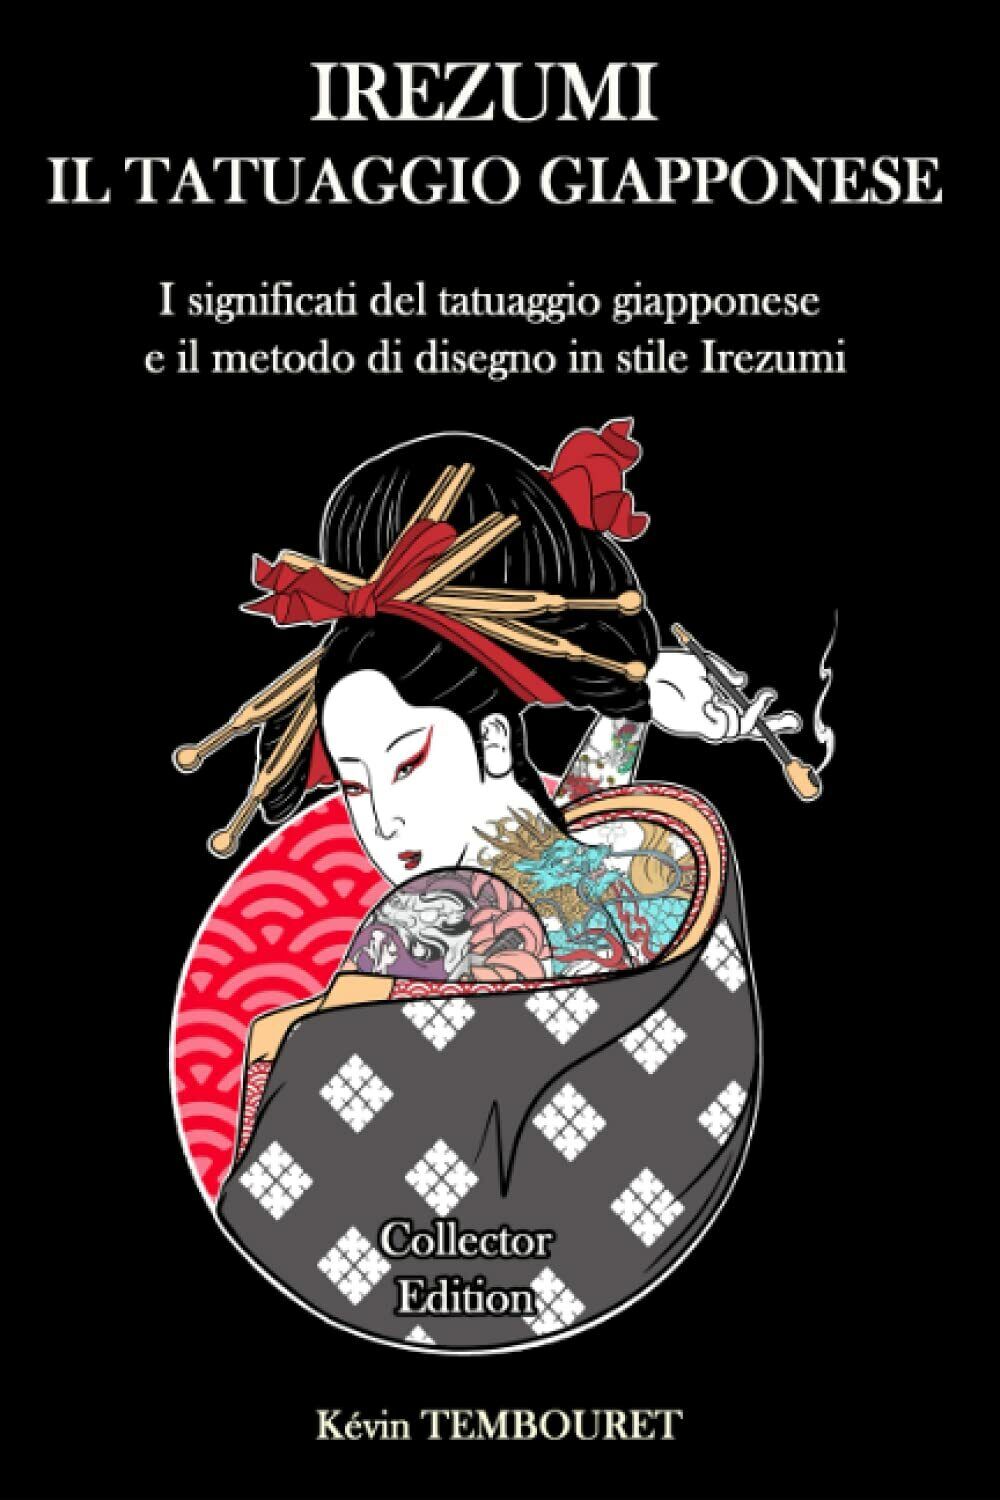 Irezumi, il tatuaggio giapponese - Collector Edition: significati del tatuaggio 